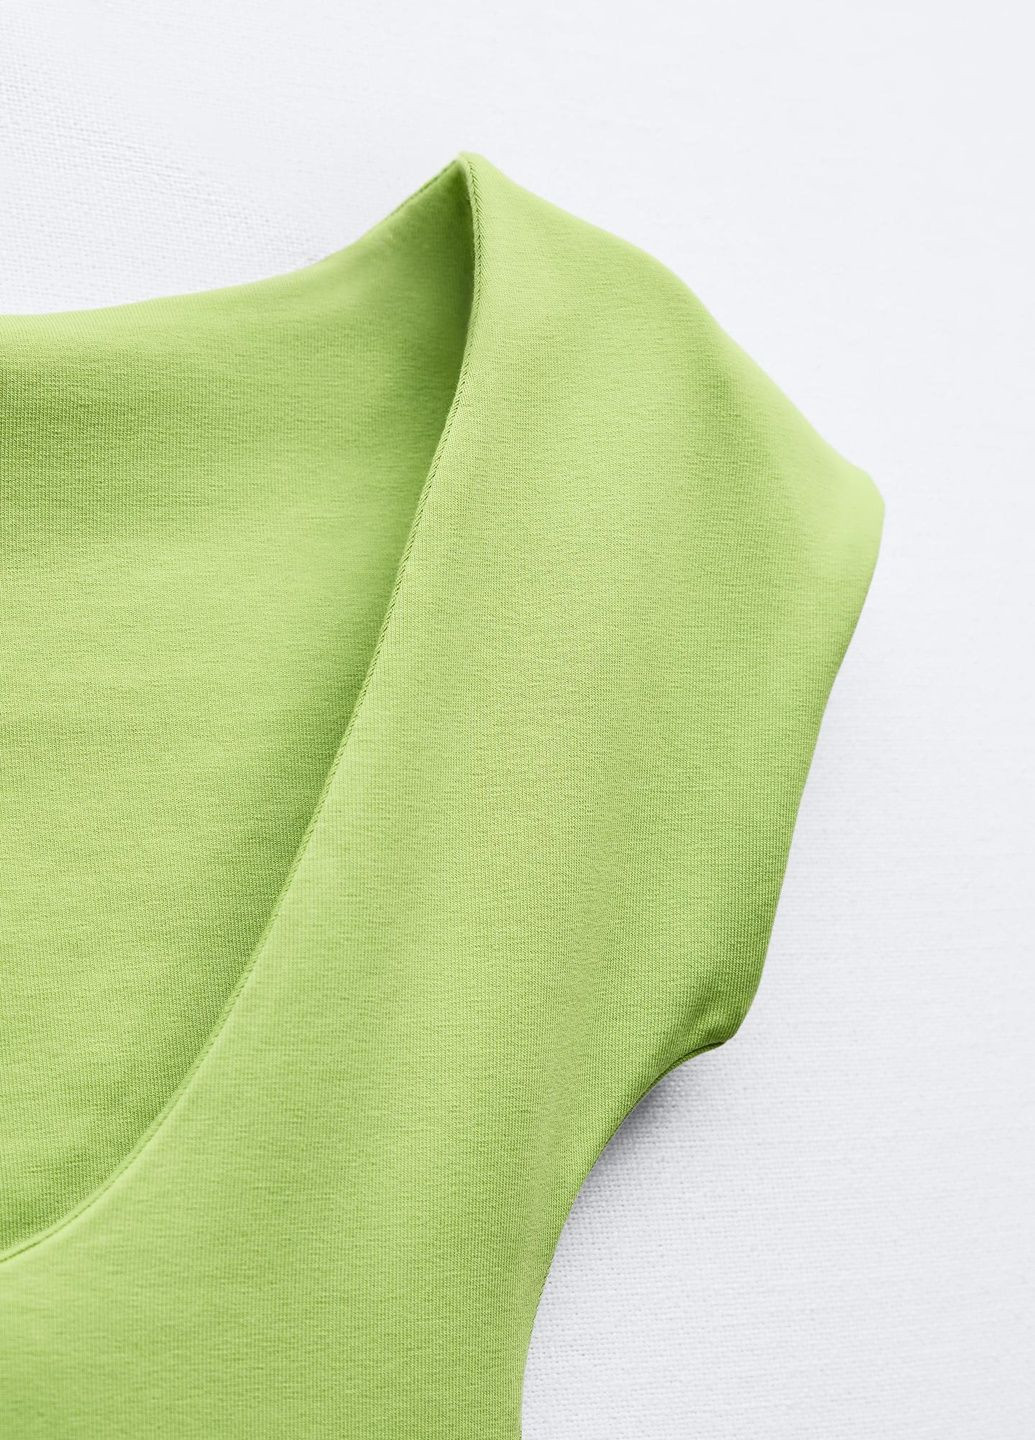 Светло-зеленое праздничный платье Zara однотонное